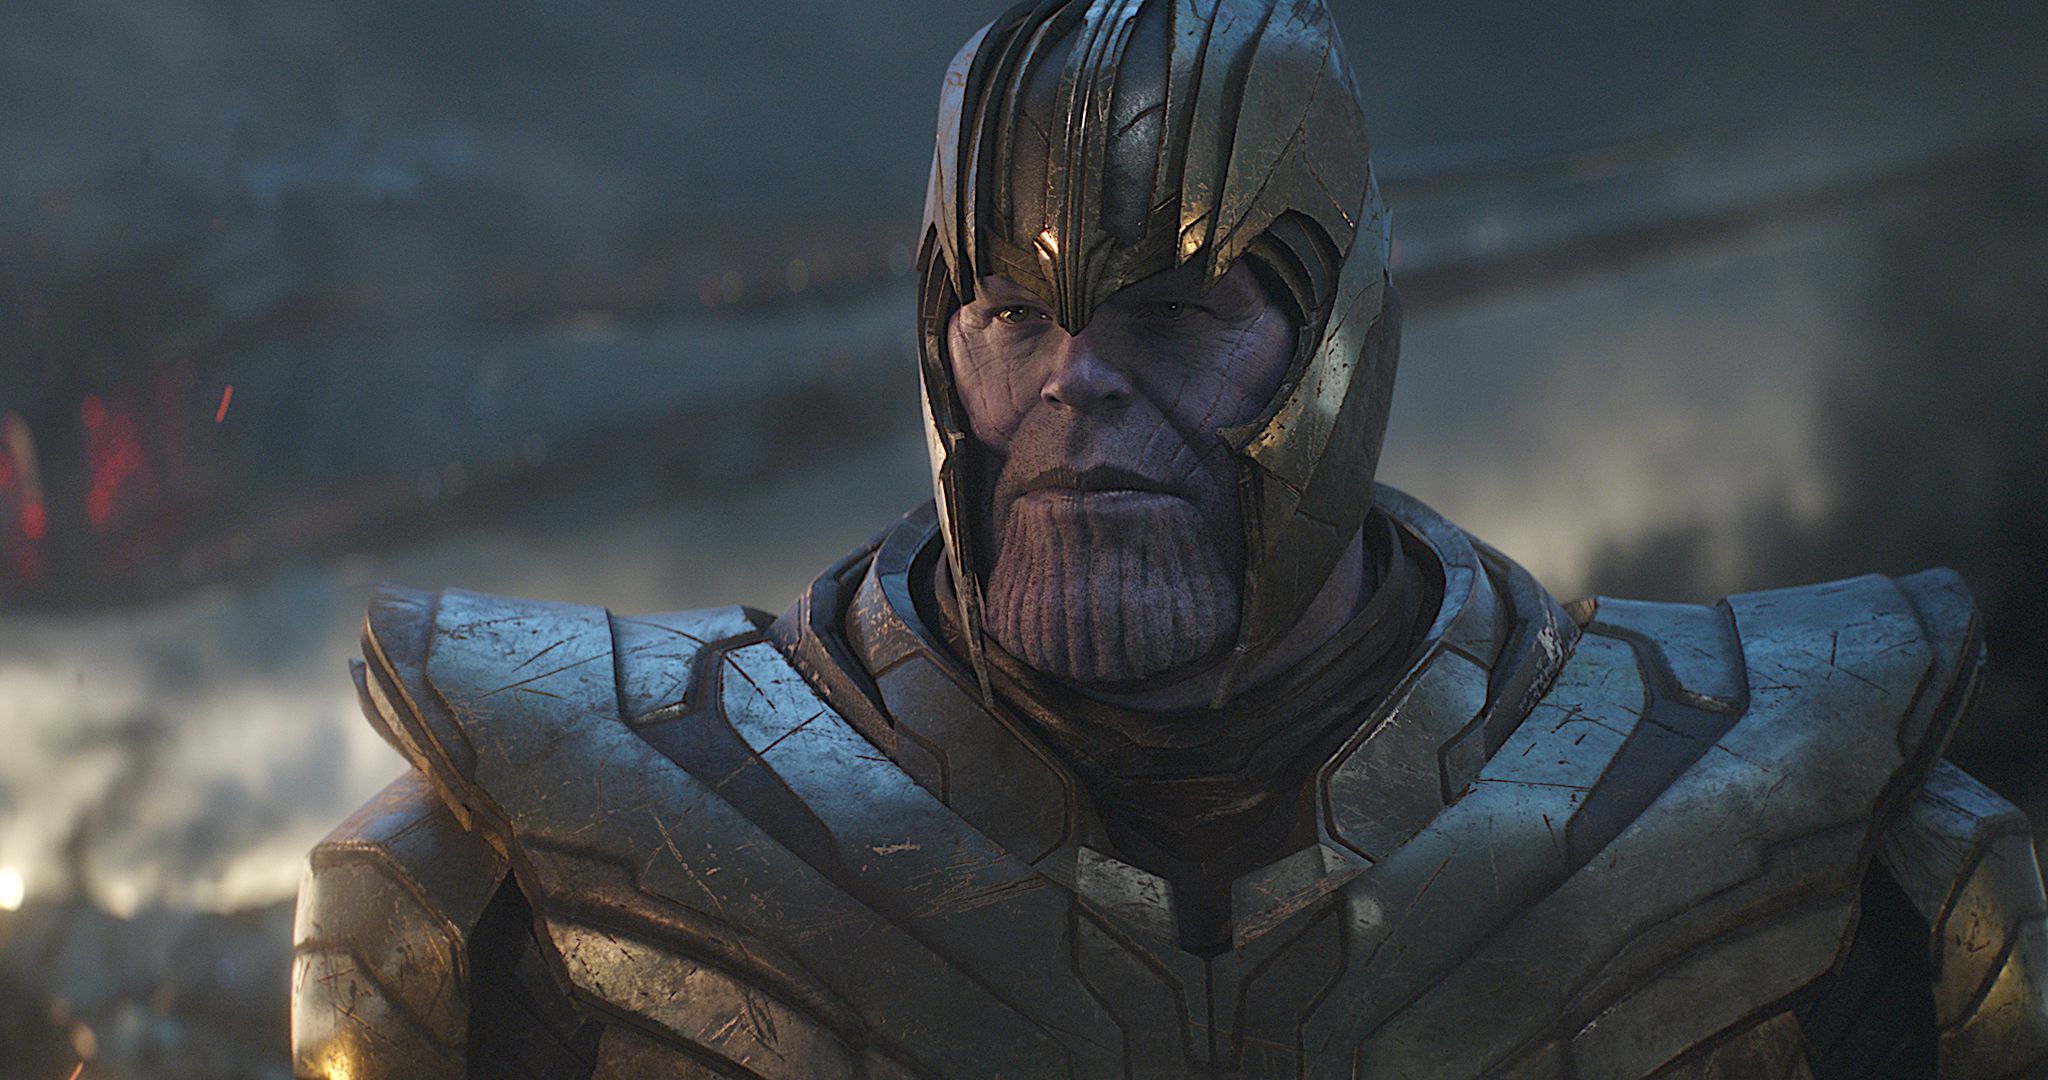 Endgame Is the 'Final' Avengers Movie Says Marvel Boss - IGN